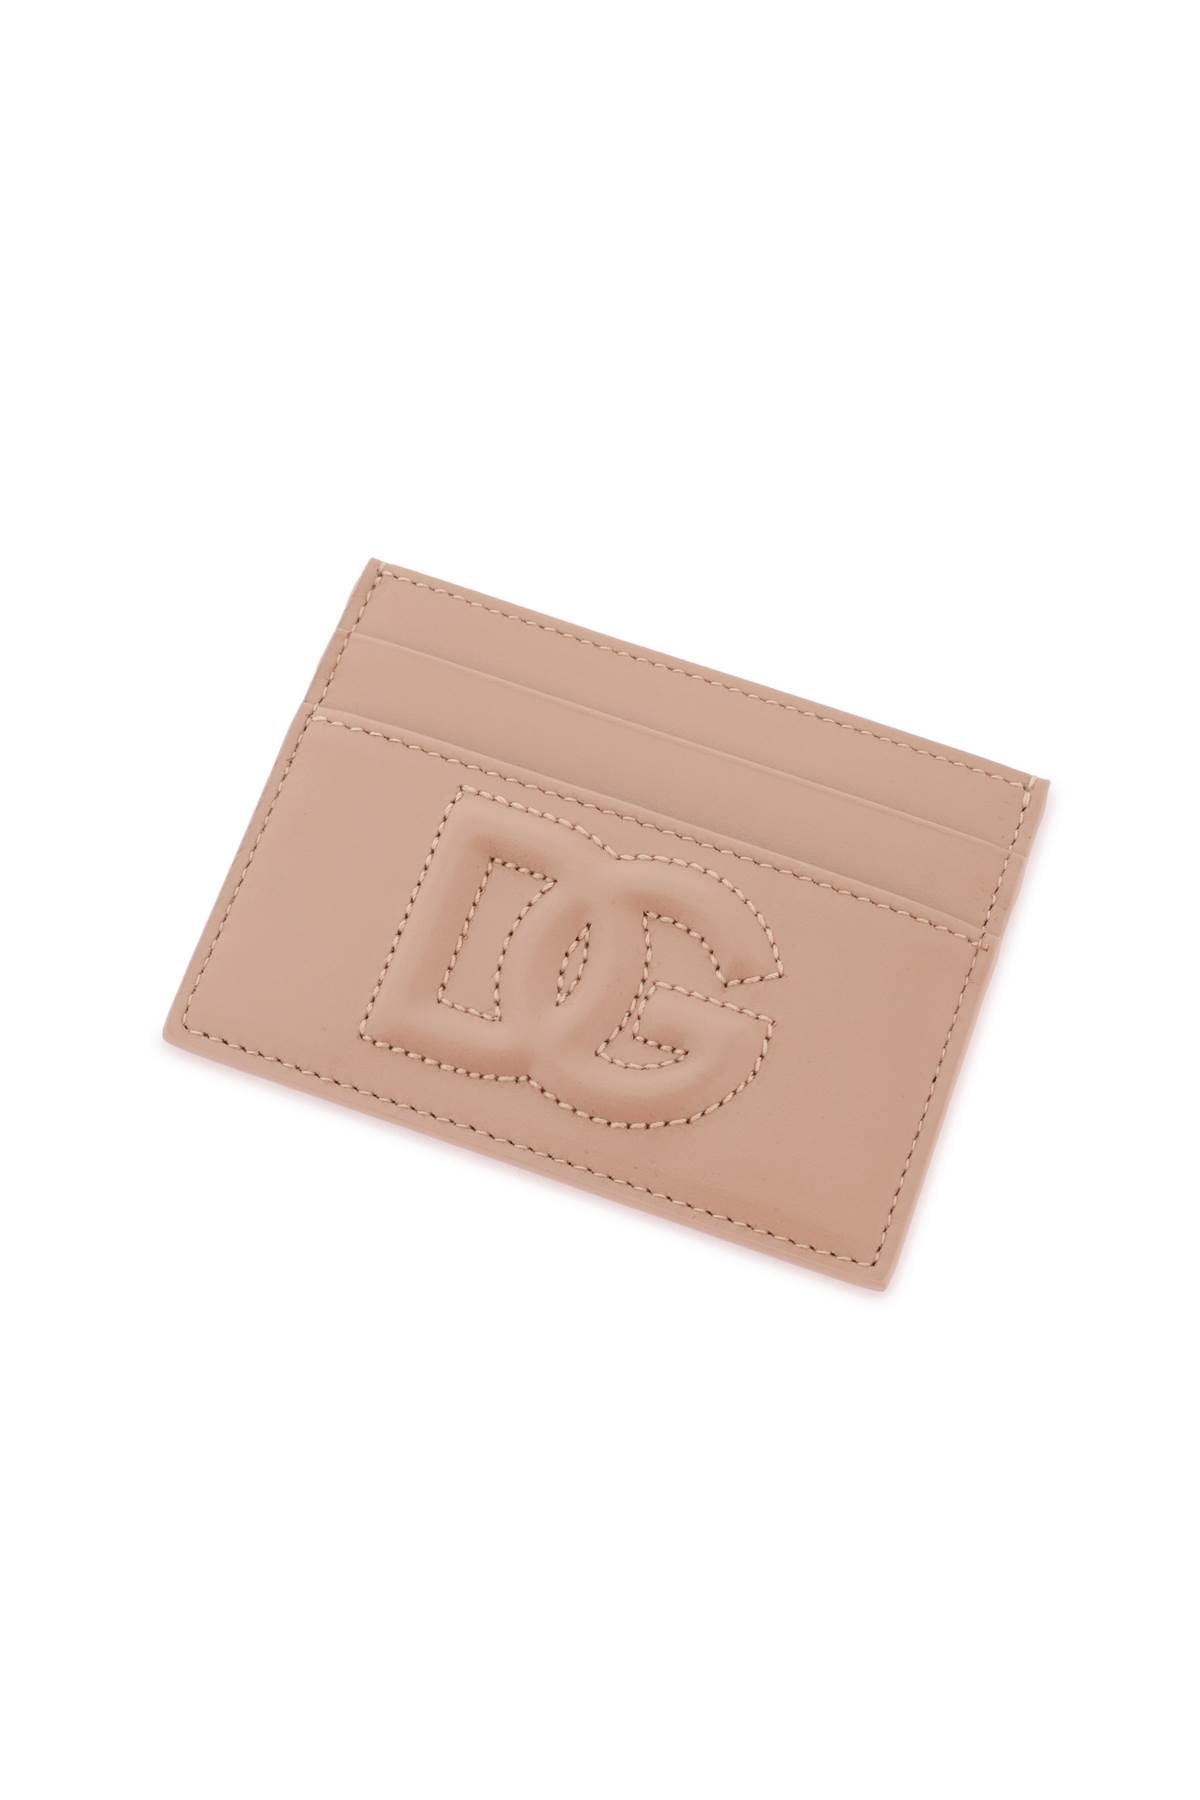 Dolce & Gabbana Dg Logo Cardholder Women - 2